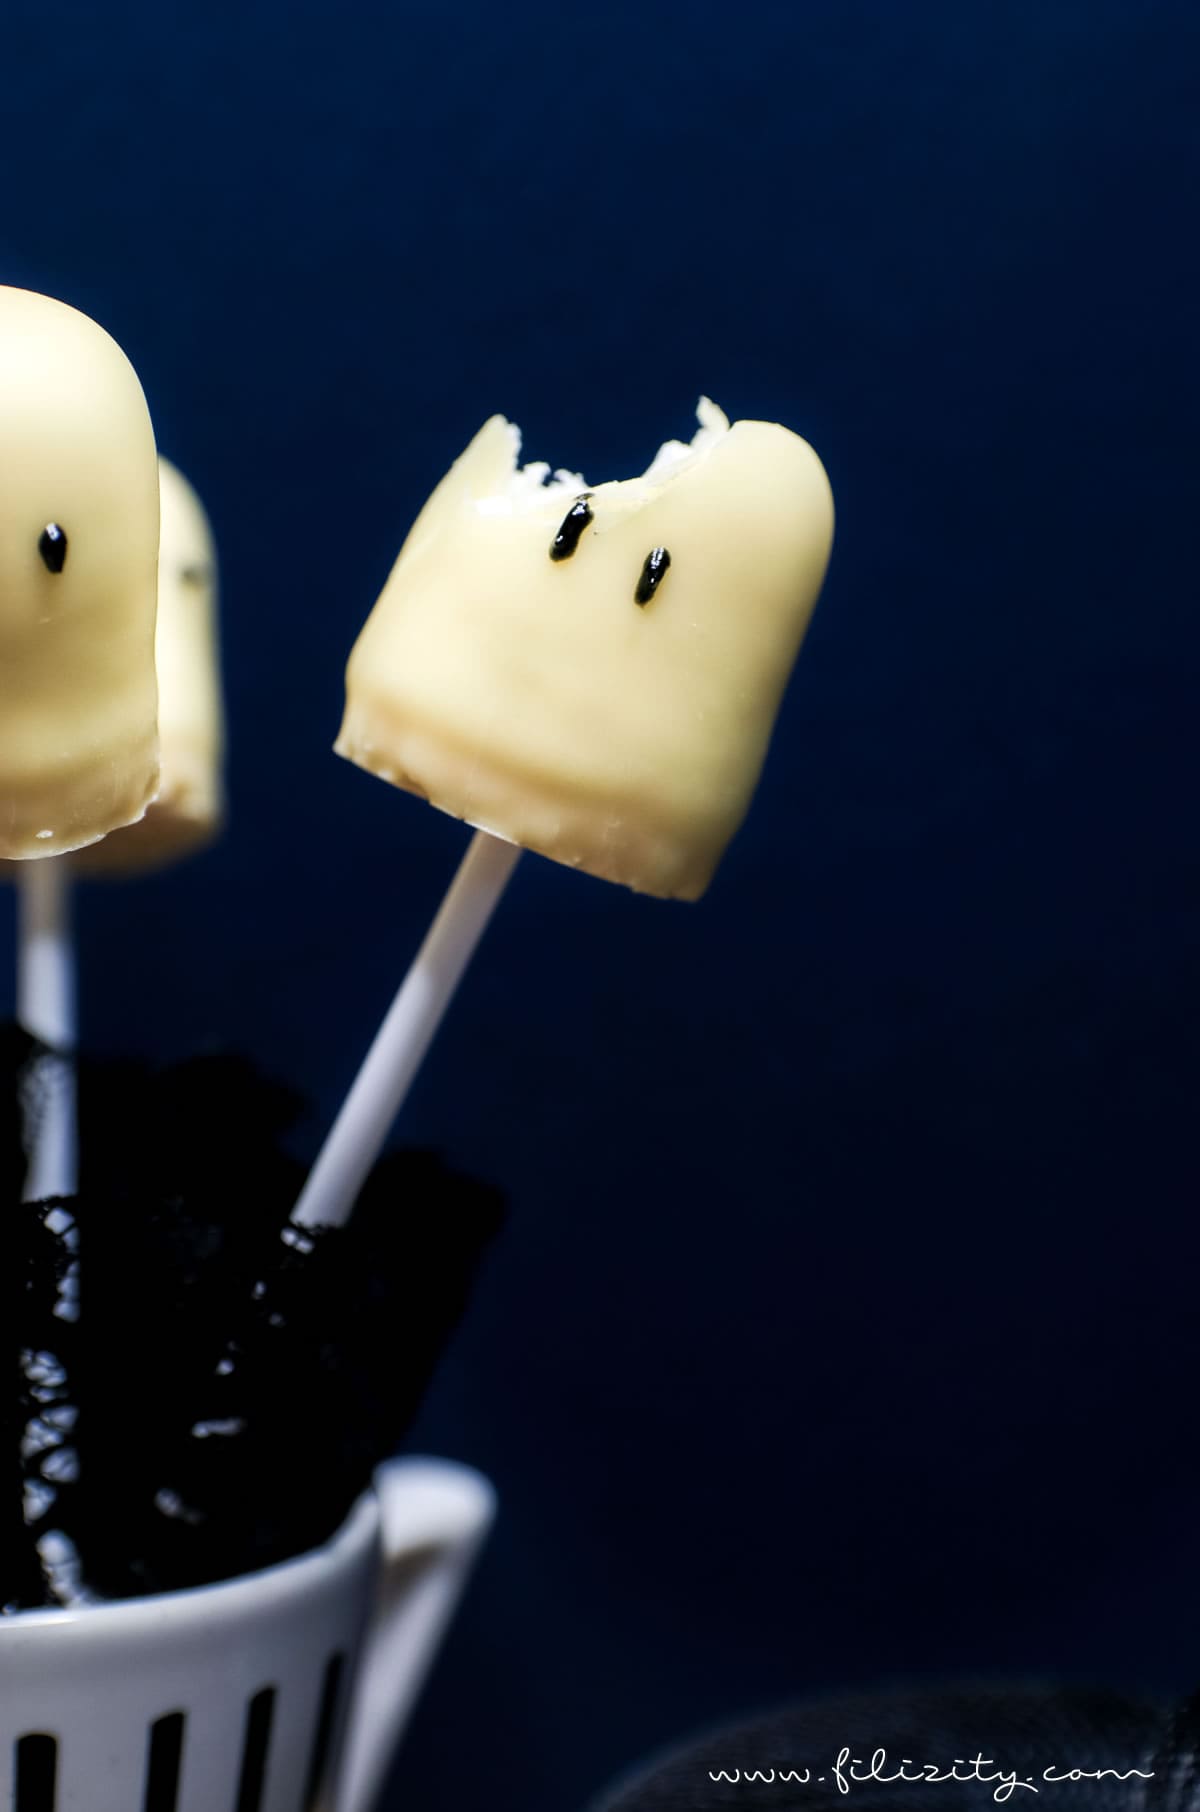 Schnelles & einfaches Halloween-Rezept: Geister-Lollies und Schattenmonster aus Schaumküssen selber machen | Filizity.com | Food-Blog aus dem Rheinland #halloween #rezept #geister #booh